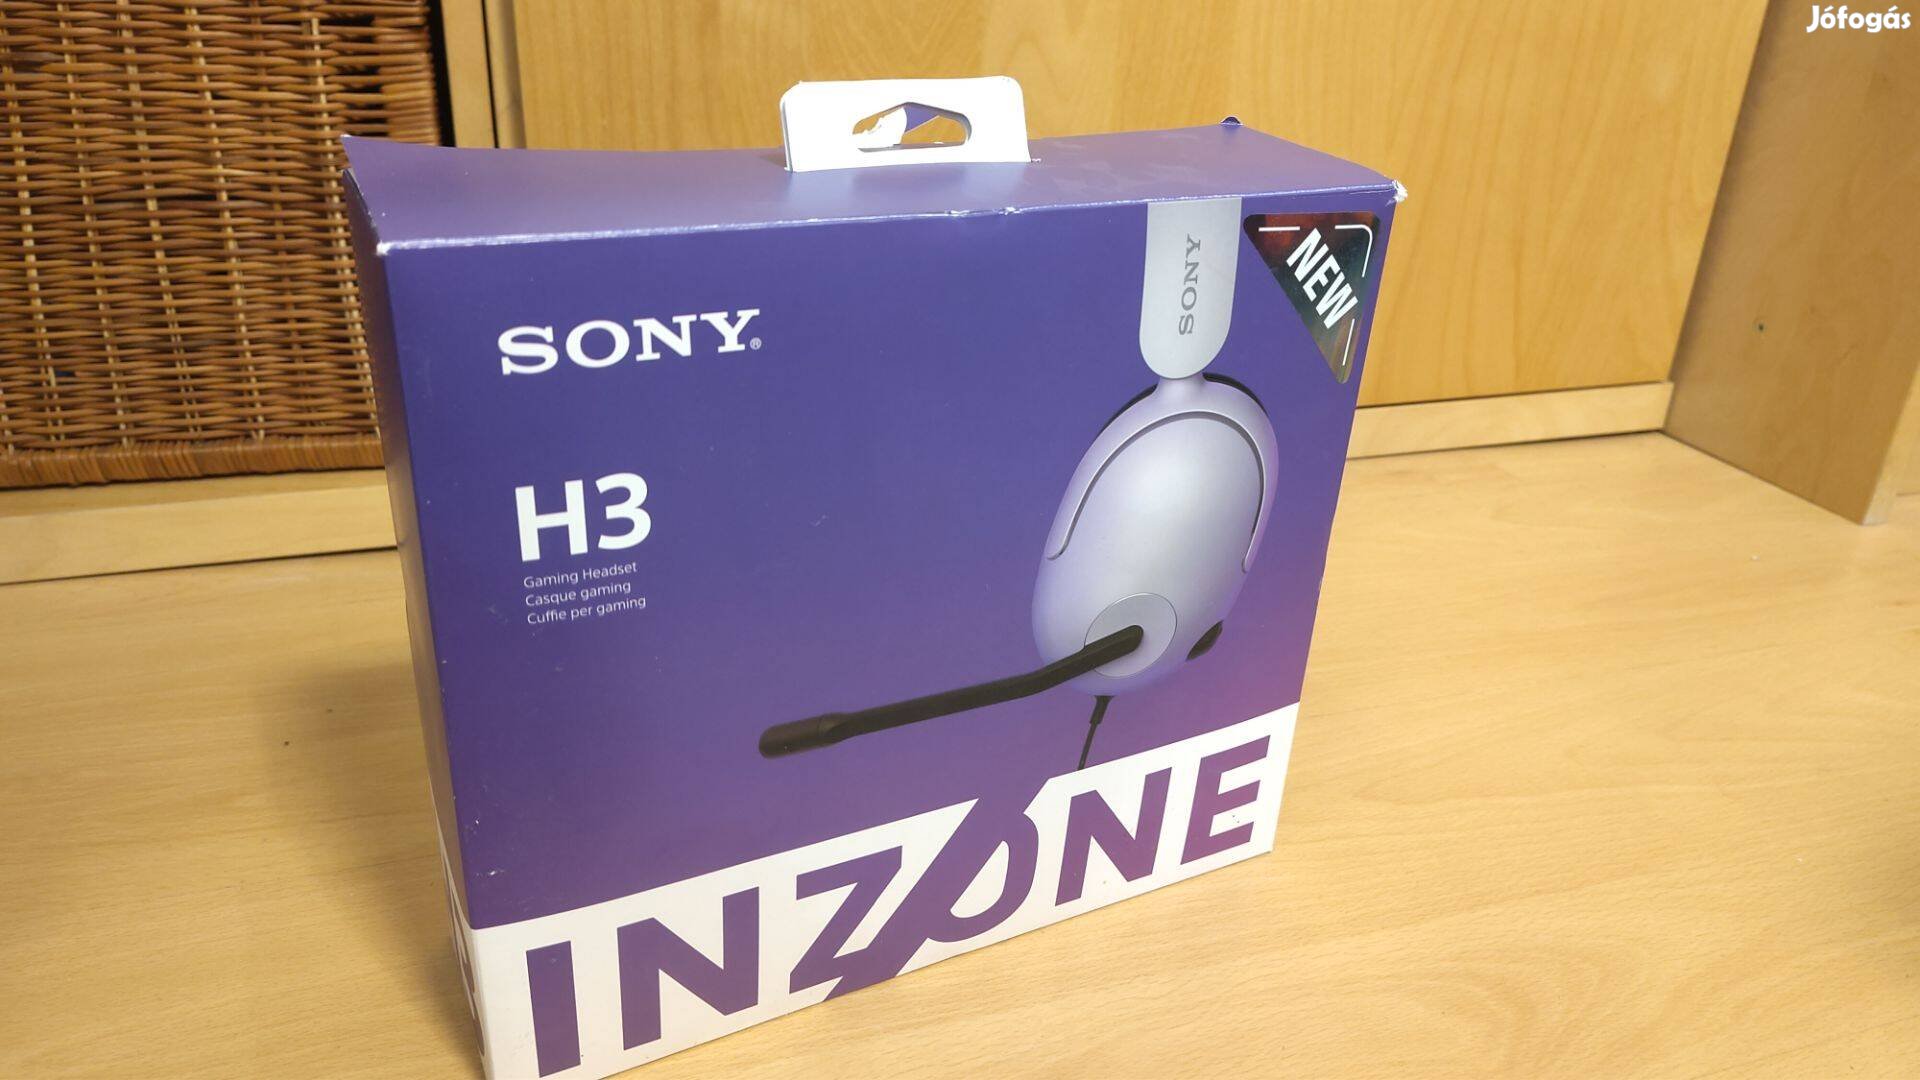 PS5/PC Inzone H3 Sony fejhallgató